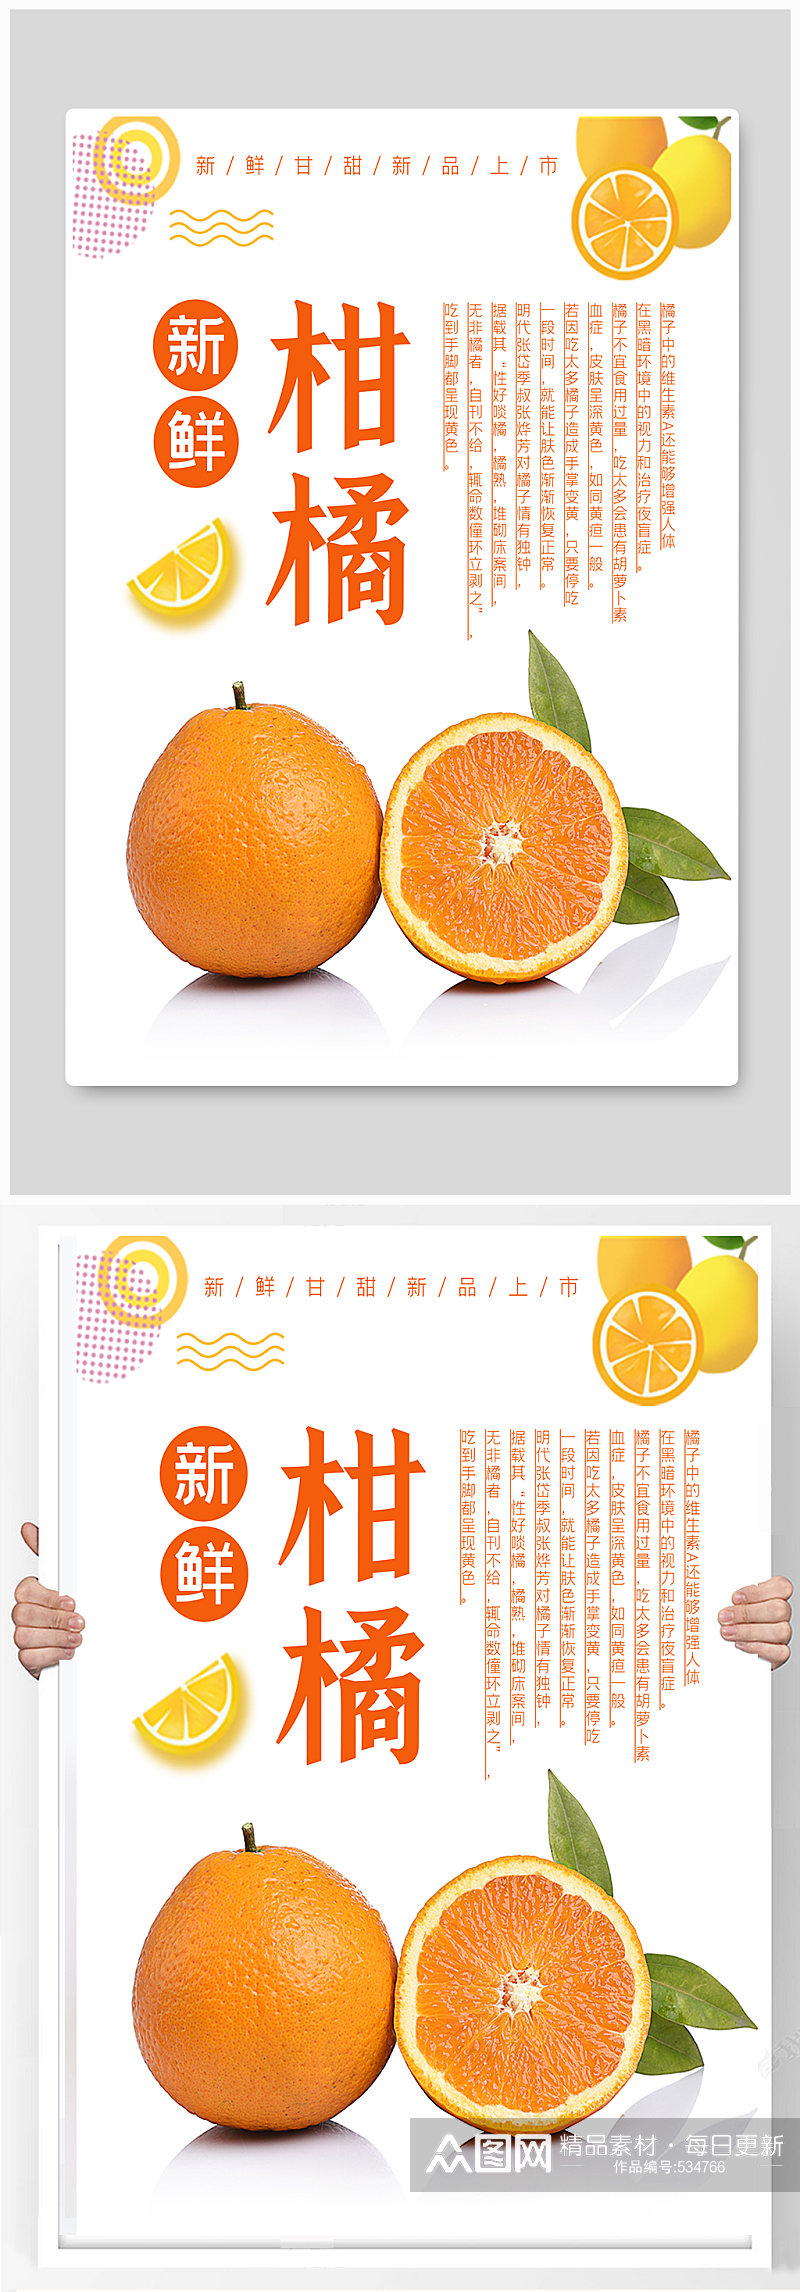 橘子水果宣传海报素材